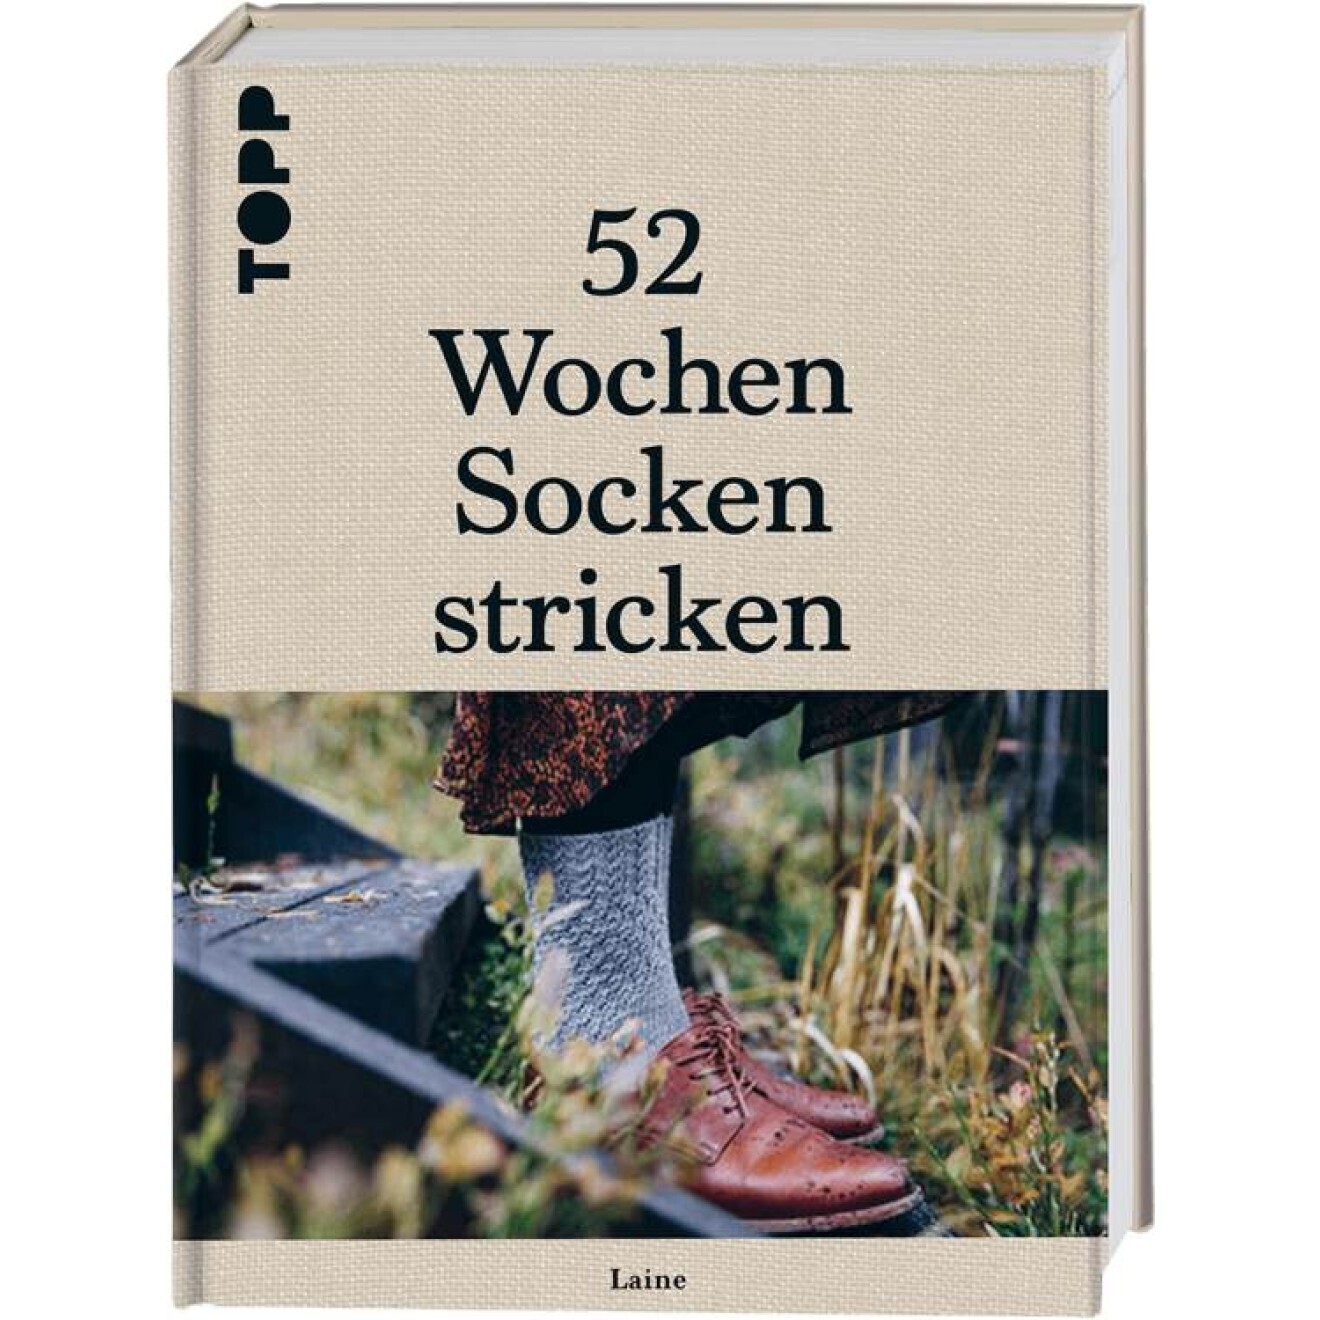 (German) 52 Wochen Socken stricken - Laine